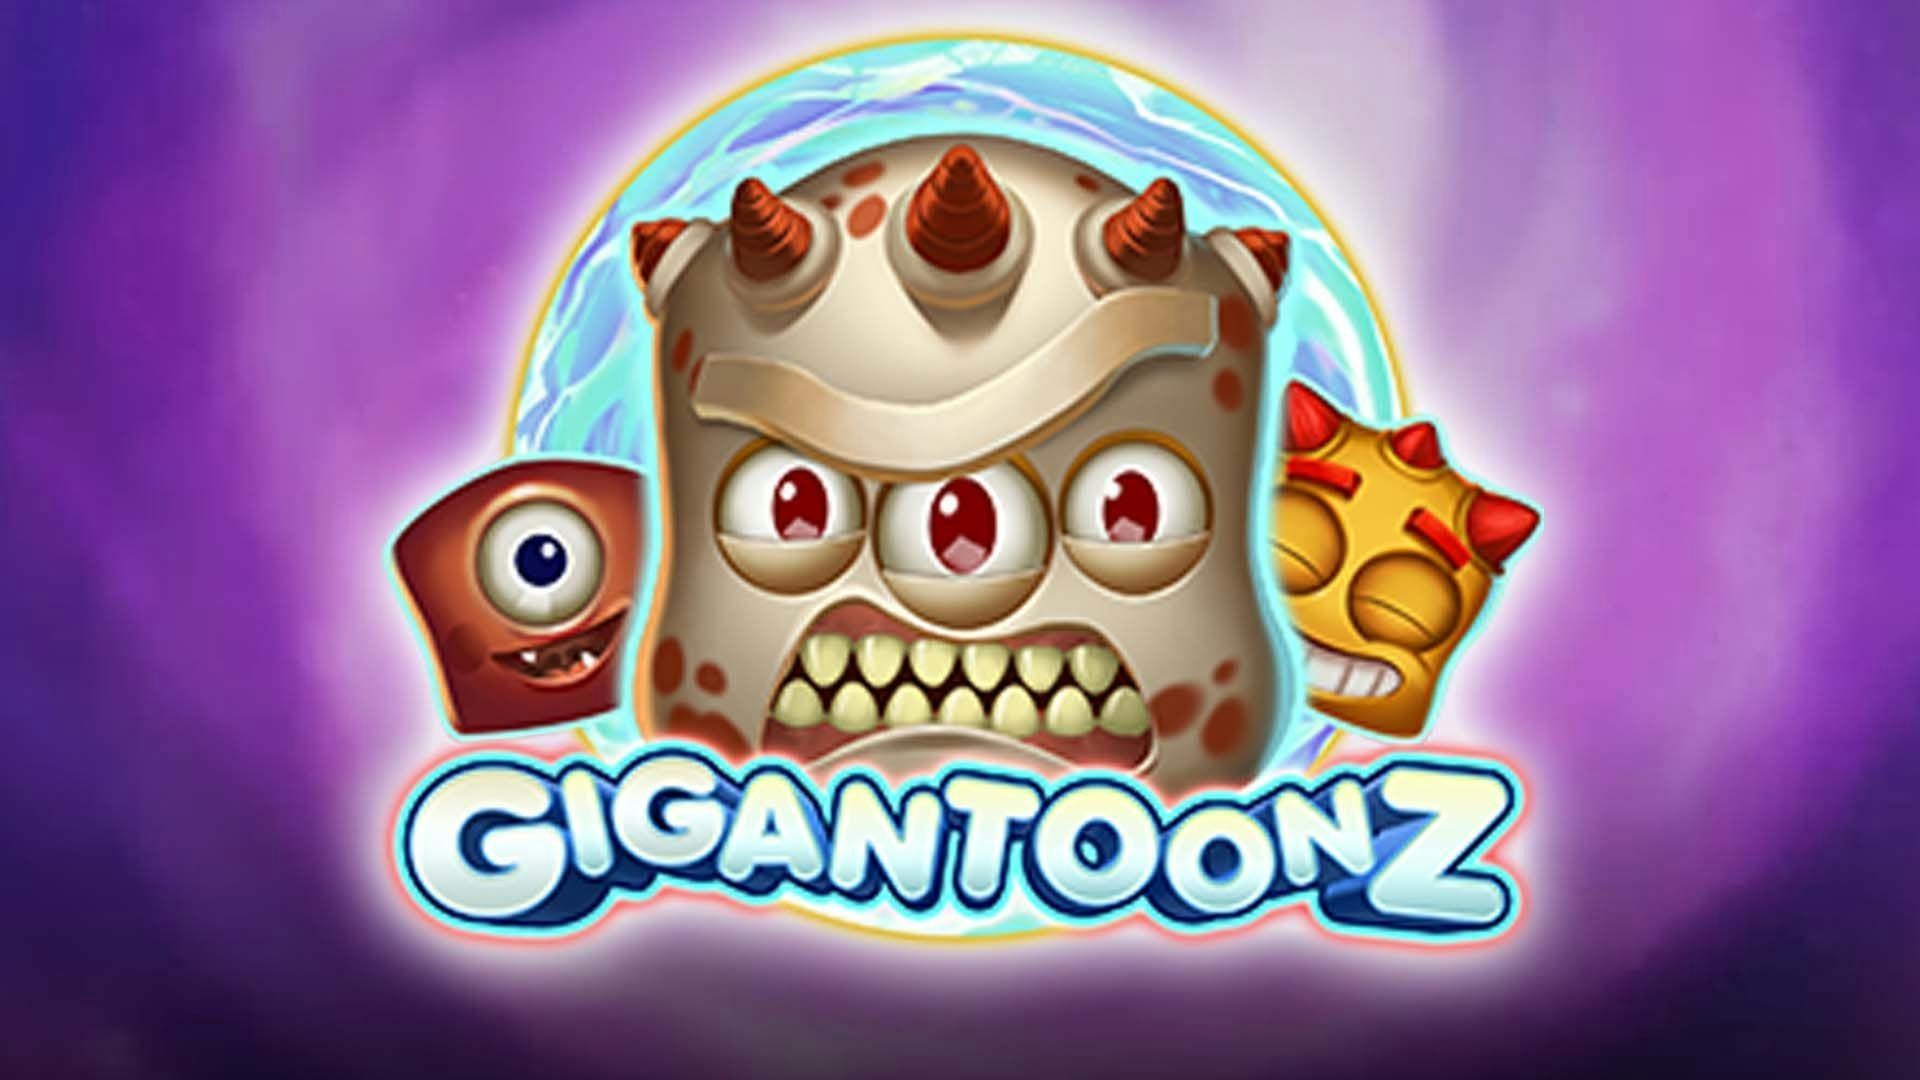 Gigantoonz Slot Machine Online Free Game Play